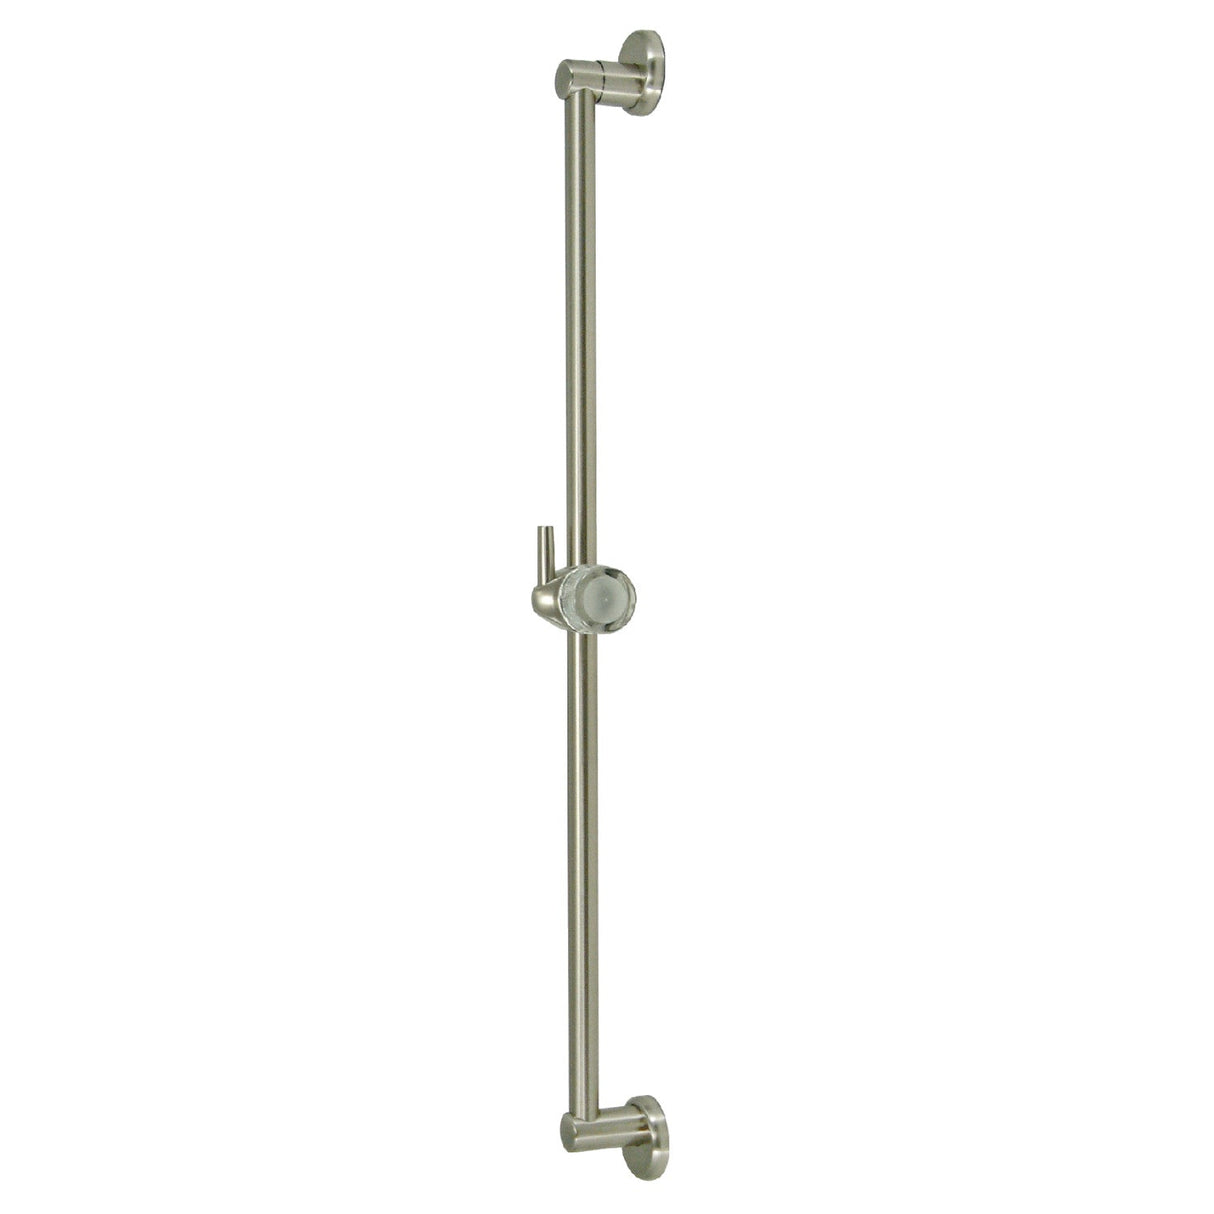 Shower Scape K180A8 24-Inch Shower Slide Bar with Pin Mount Hook, Brushed Nickel